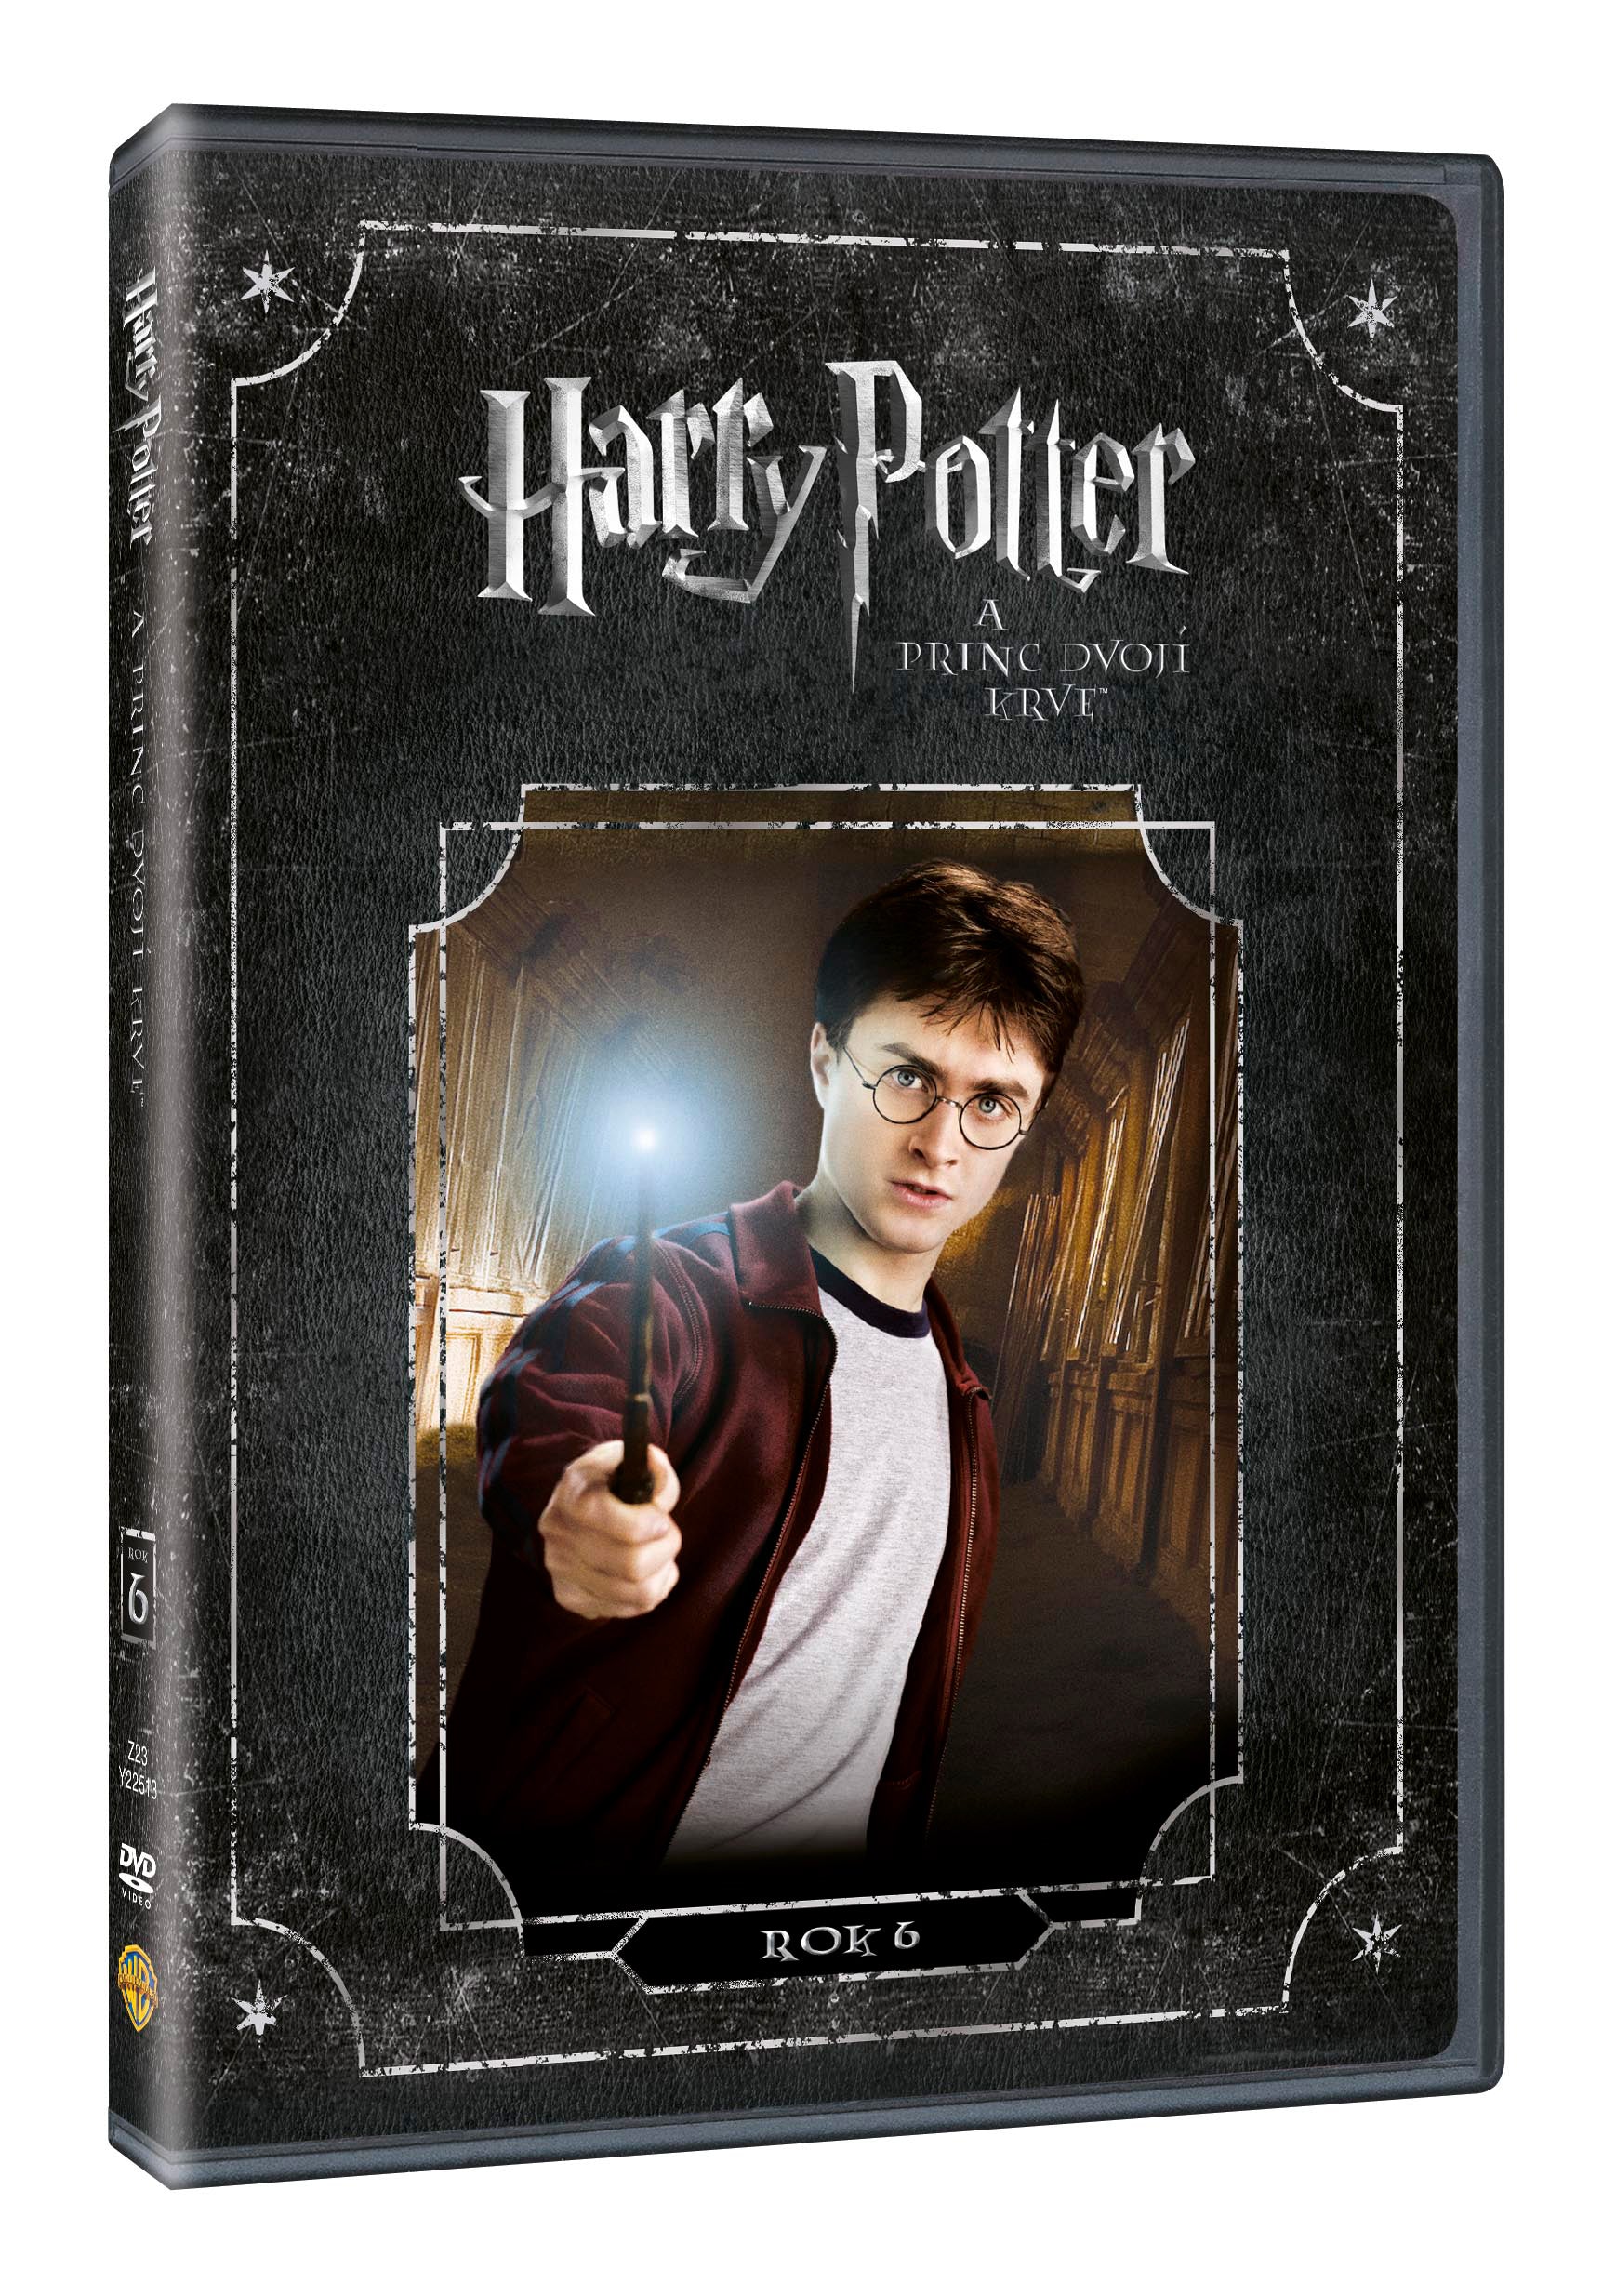 Harry Potter und der Halbblutprinz DVD / Harry Potter und der Halbblutprinz